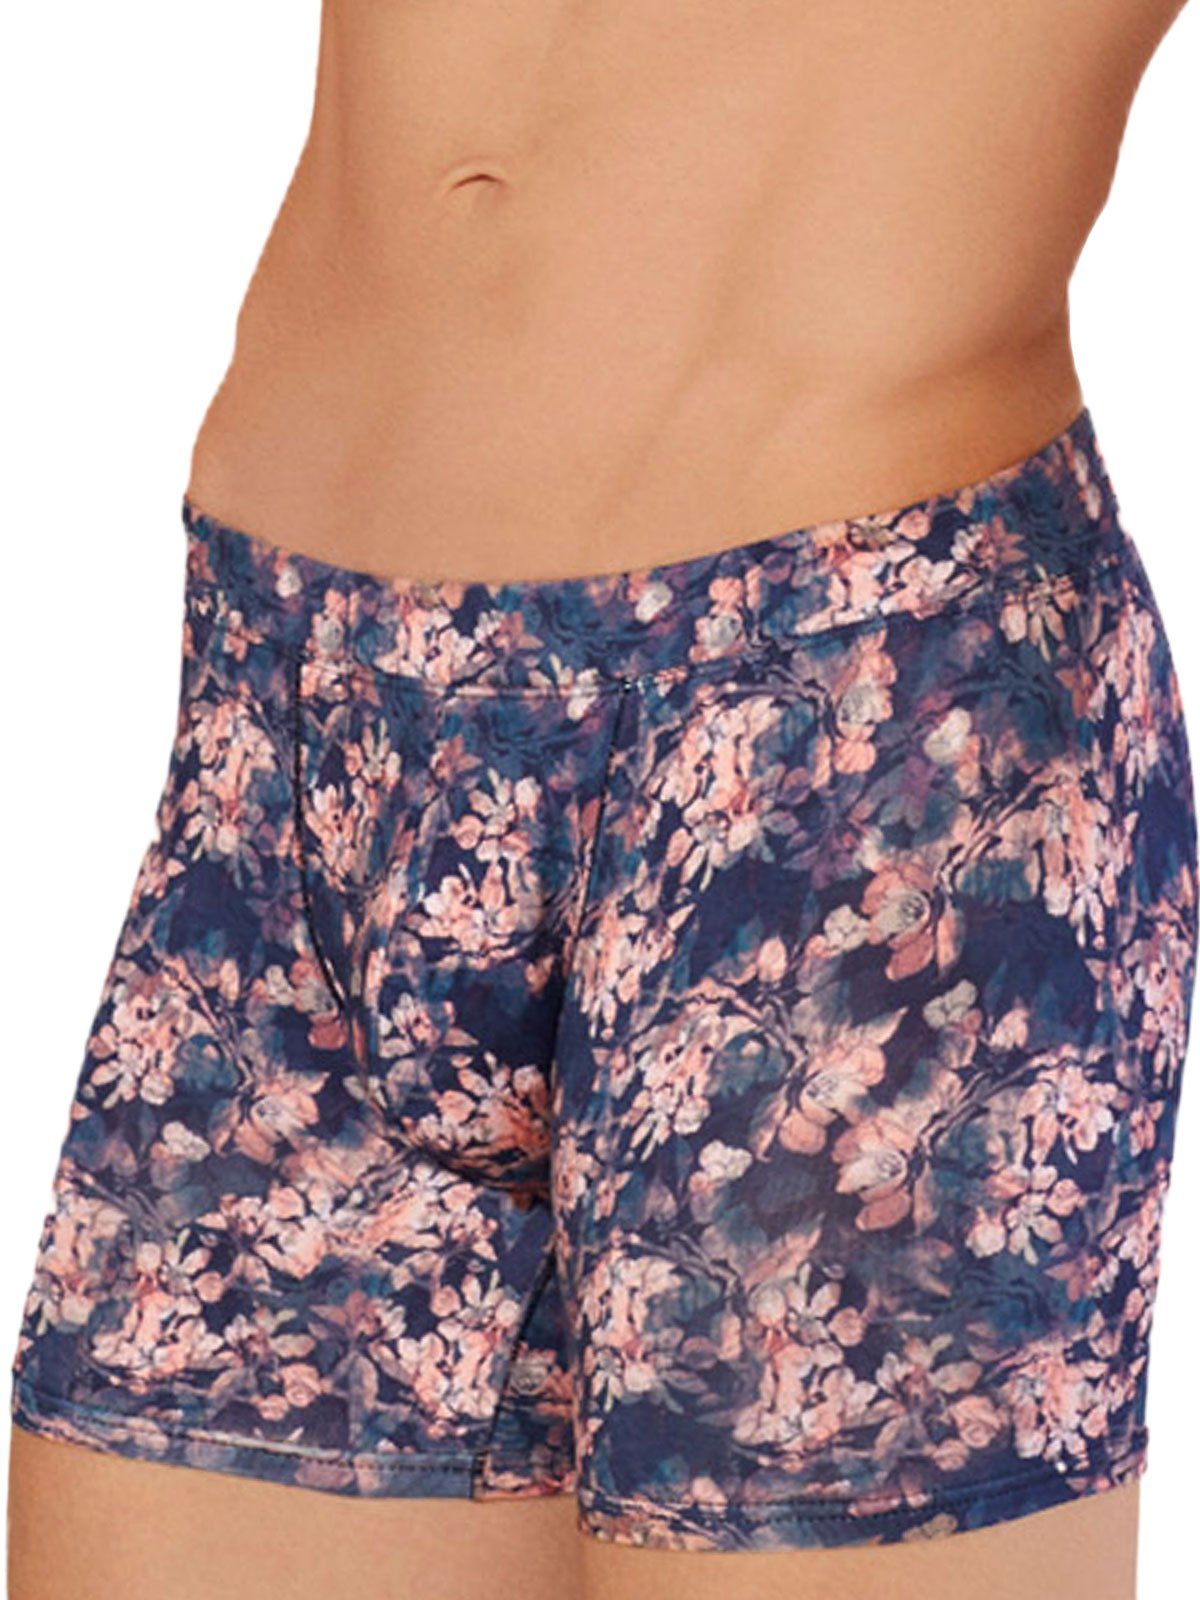 Doreanse Imprime DA1856 M, Herren Pants Underwear Boxershorts Hipster Wild Flower,